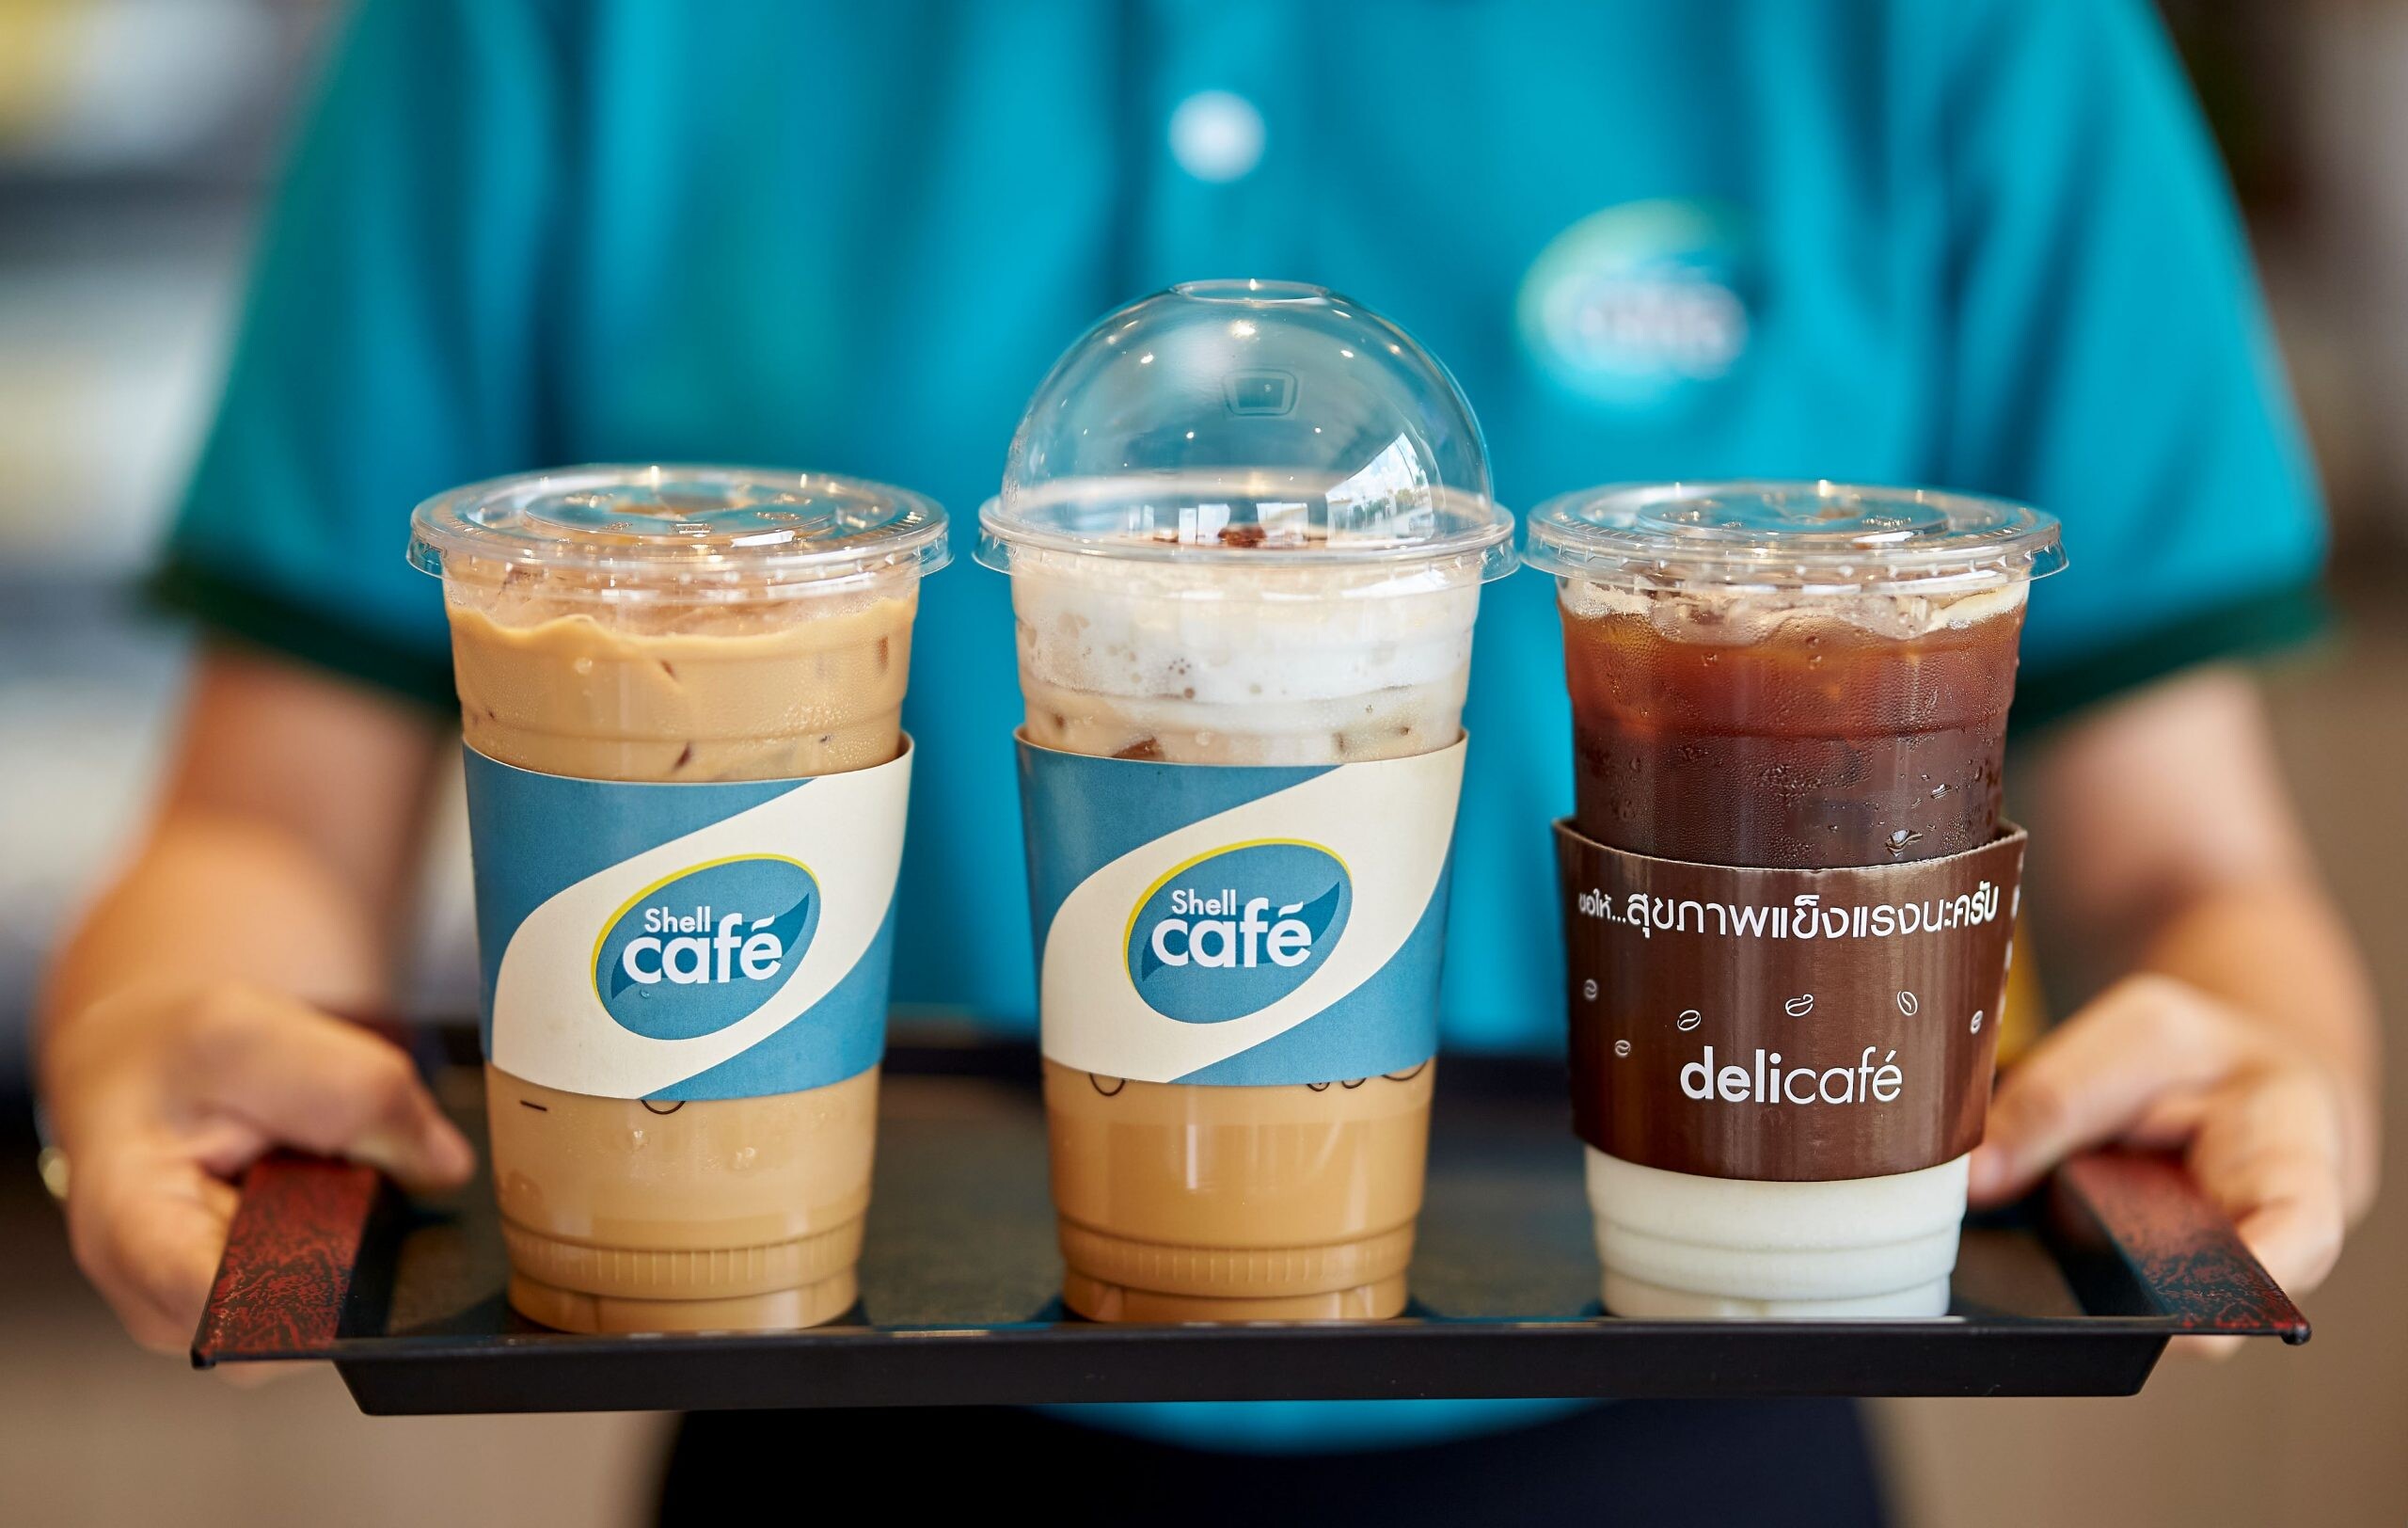 เชลล์ คาเฟ่ และเดลี่คาเฟ่ จัด "โปรสุดว้าว 39 บาท" ให้เหล่าคอกาแฟได้ลิ้มลองกาแฟคุณภาพที่ใช้กาแฟอะราบีกาแท้ 100% ในราคาเพียง 39 บาทตลอดปี!*